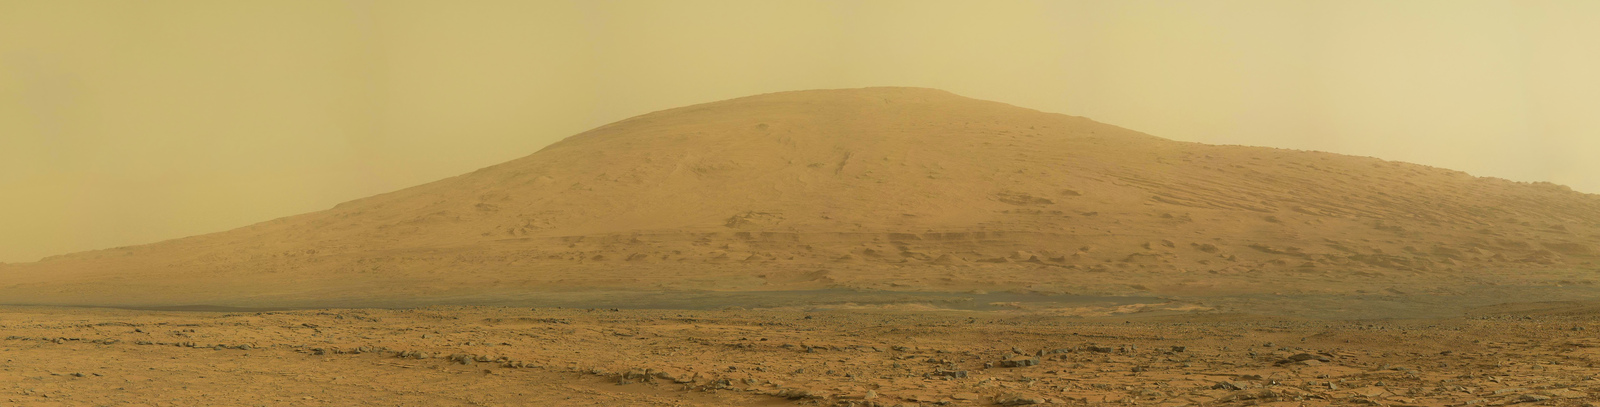 Панорама горы Шарп, полученная Curiosity на 170 сол (марсианский день)